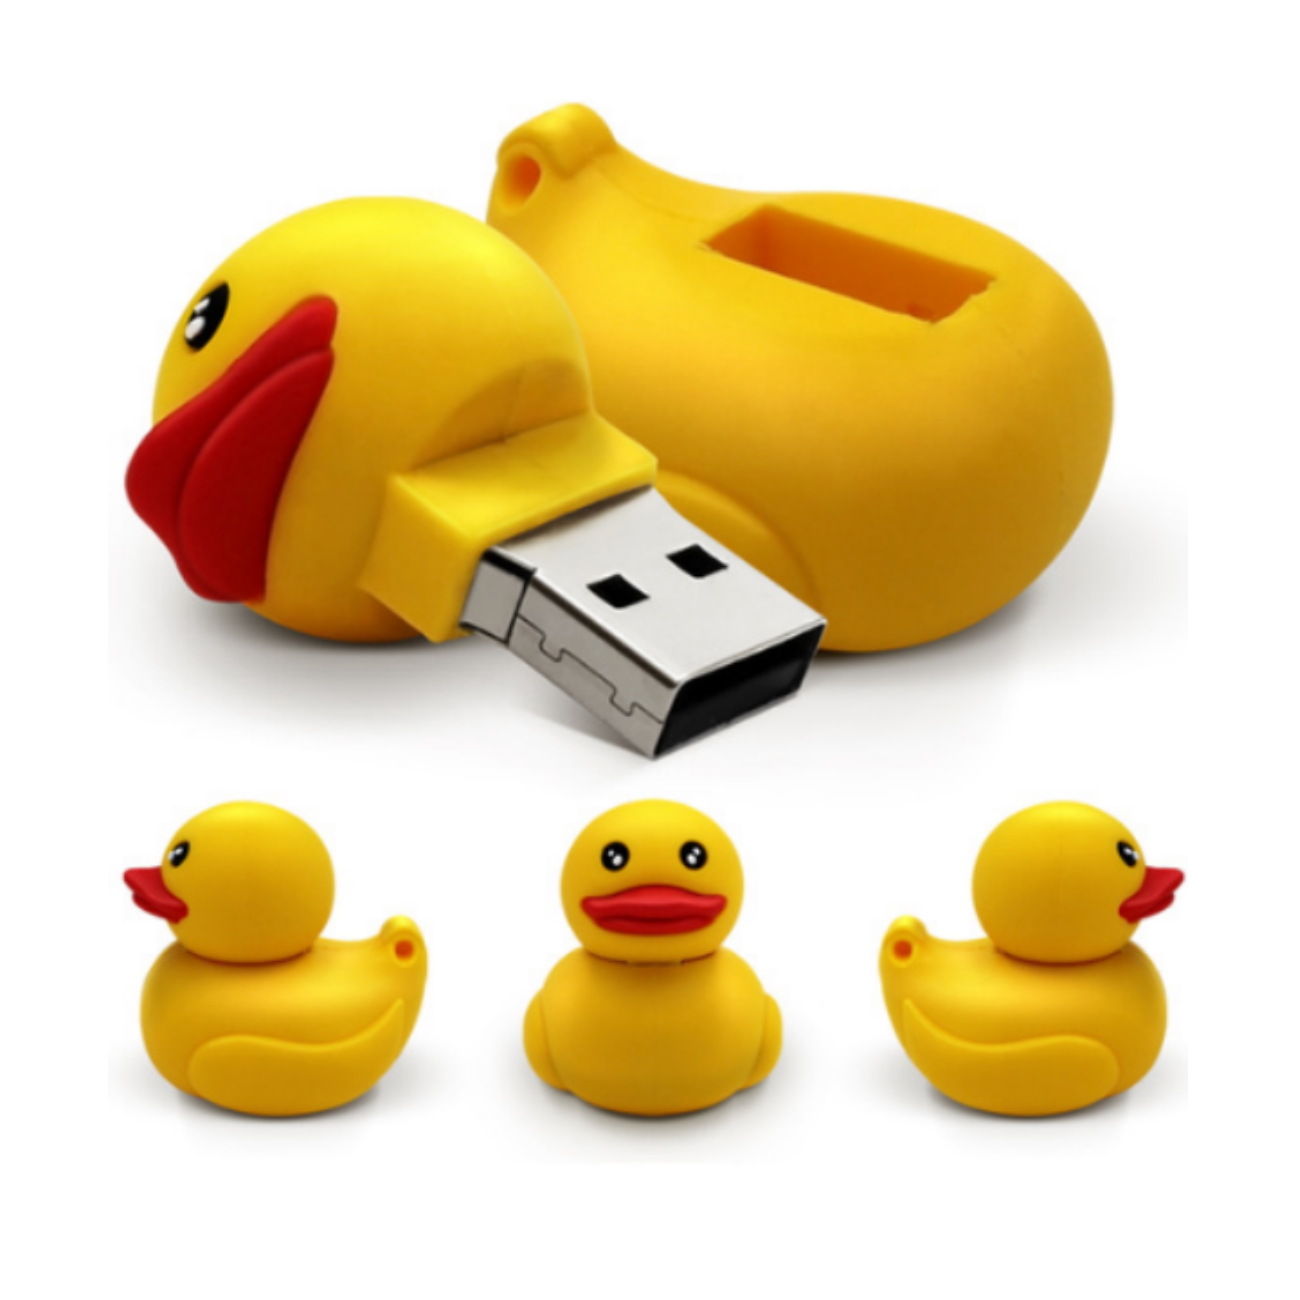 64 GB) Ente GERMANY USB USB-Stick (Gelb,